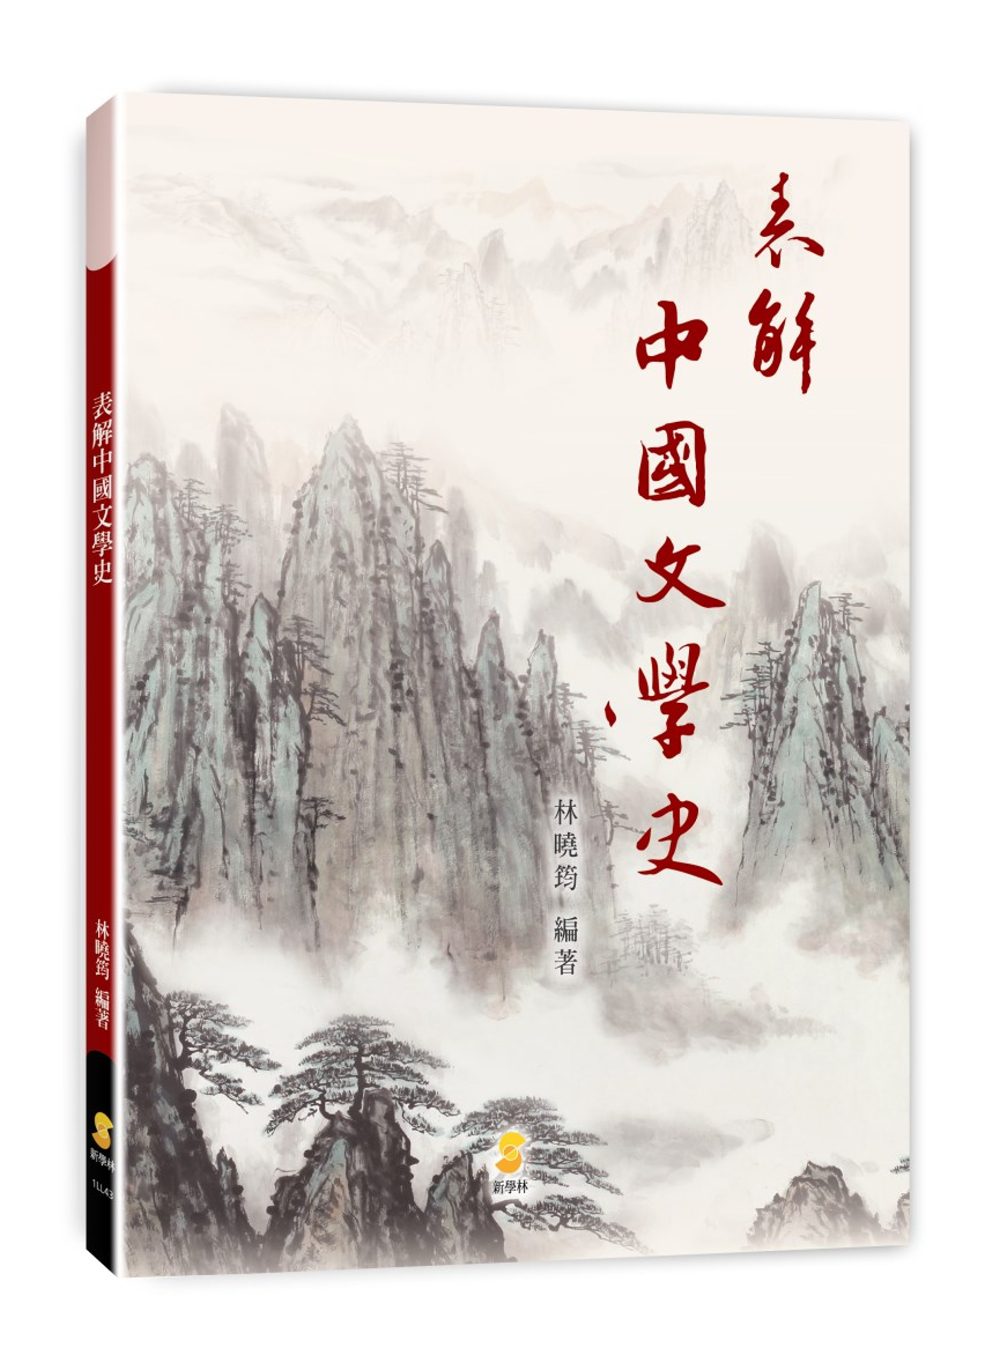 表解中國文學史